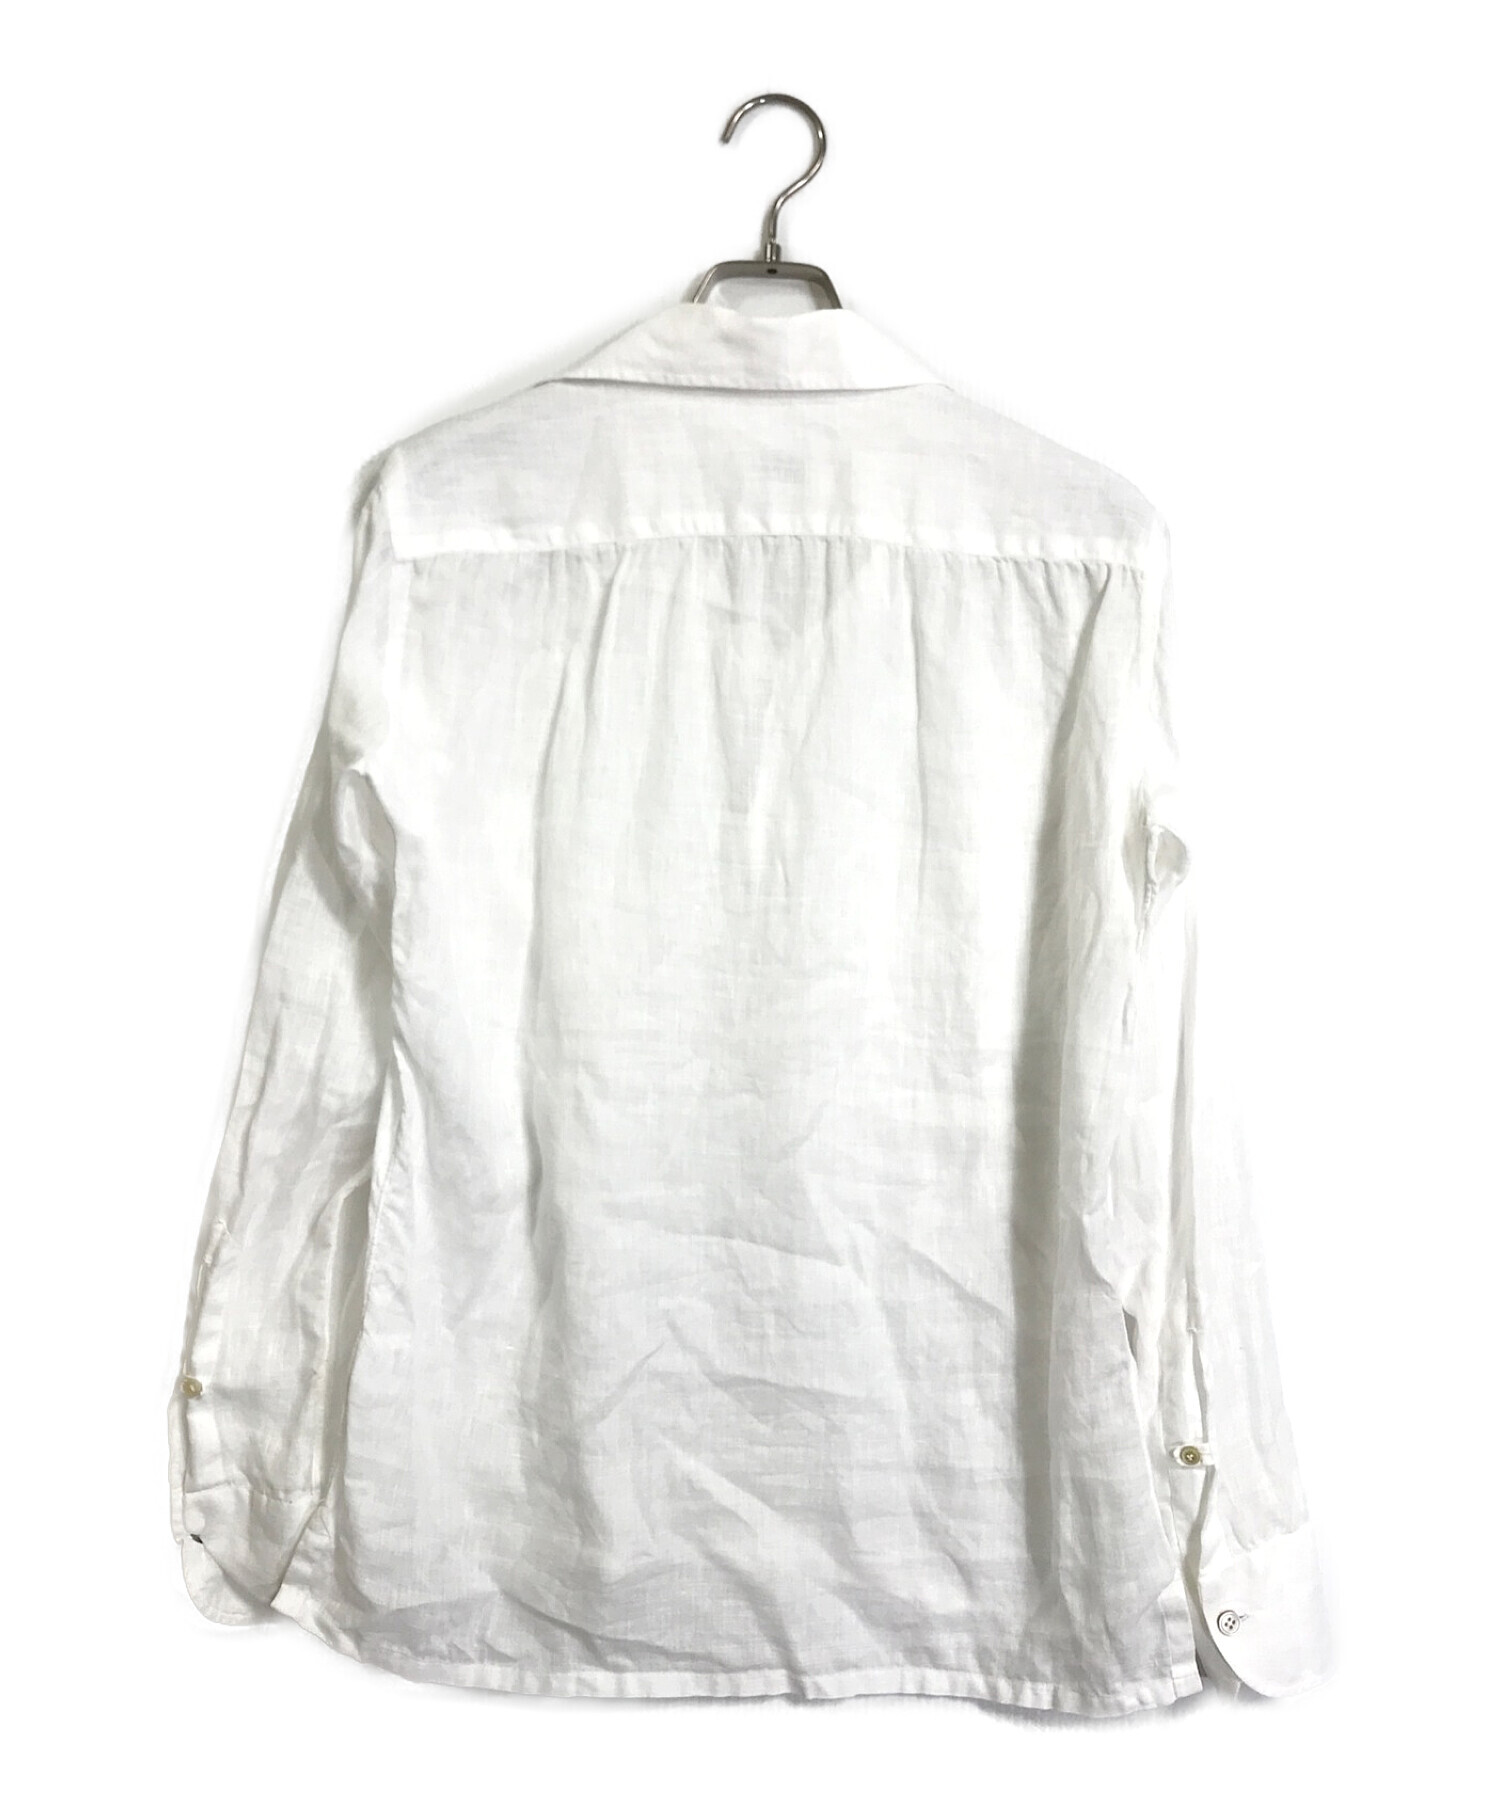 Ciriello (チリエッロ) リネンカプリシャツ ホワイト サイズ:XS